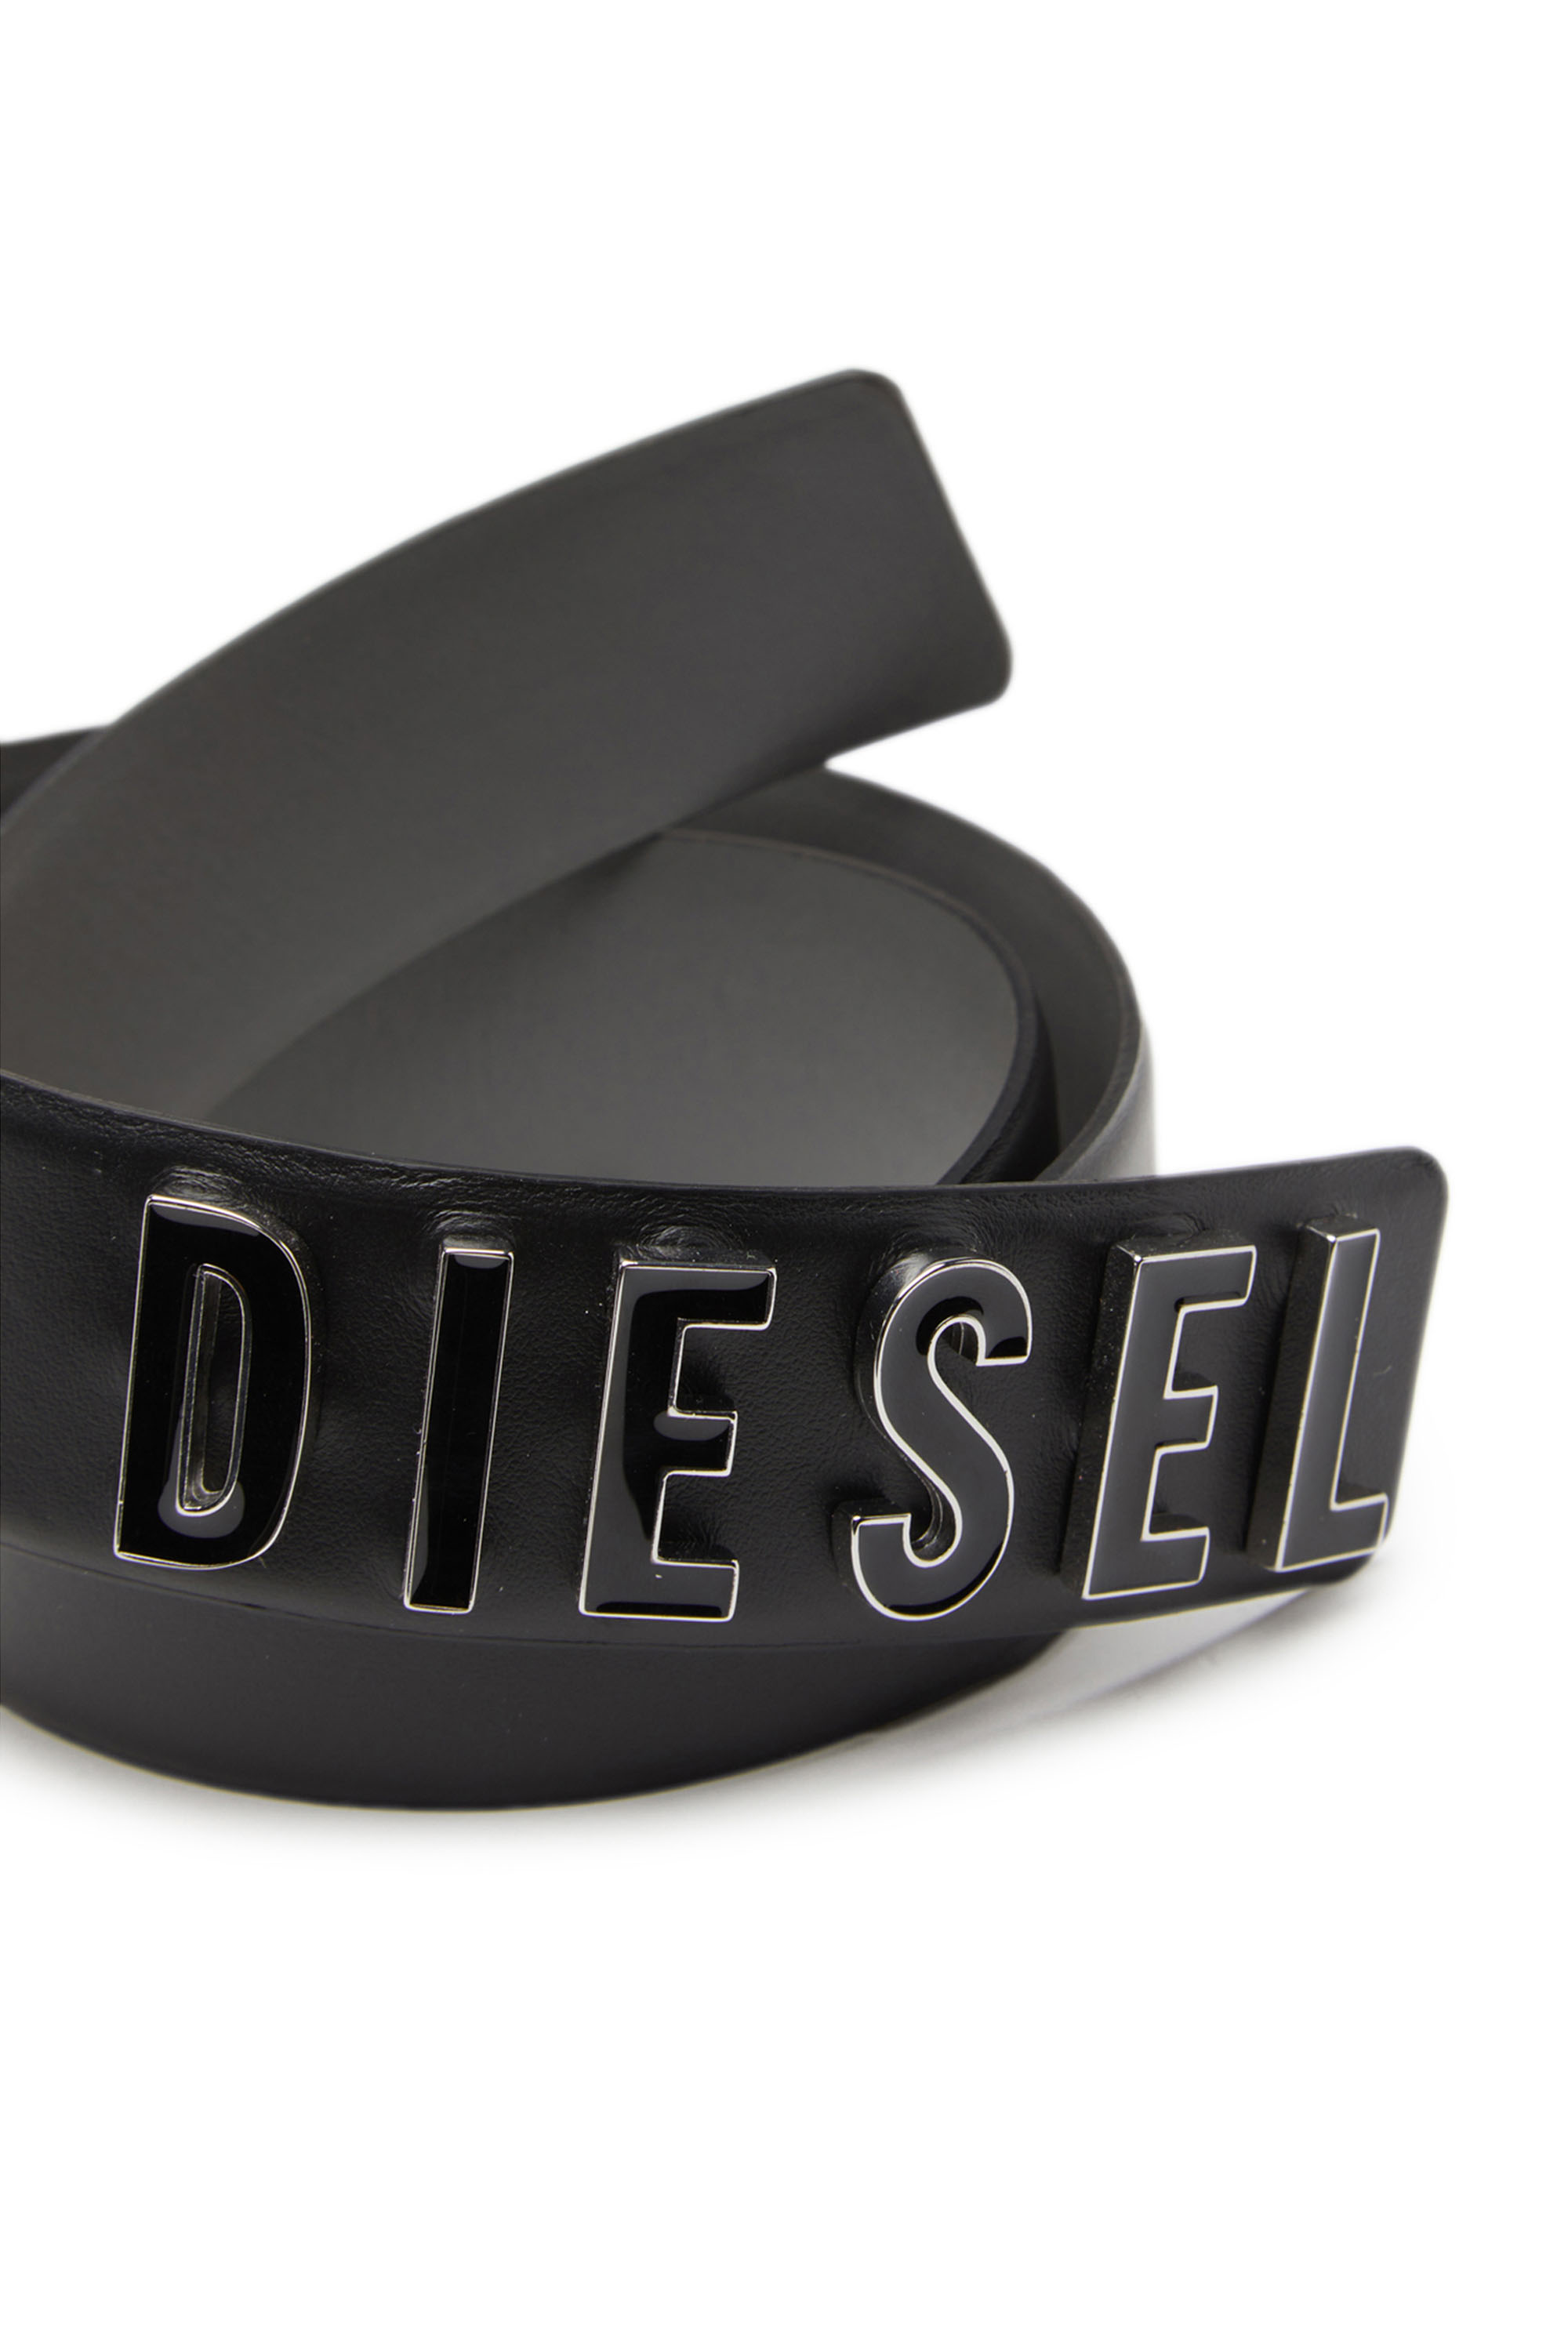 Diesel - B-LETTERS B, Noir - Image 3